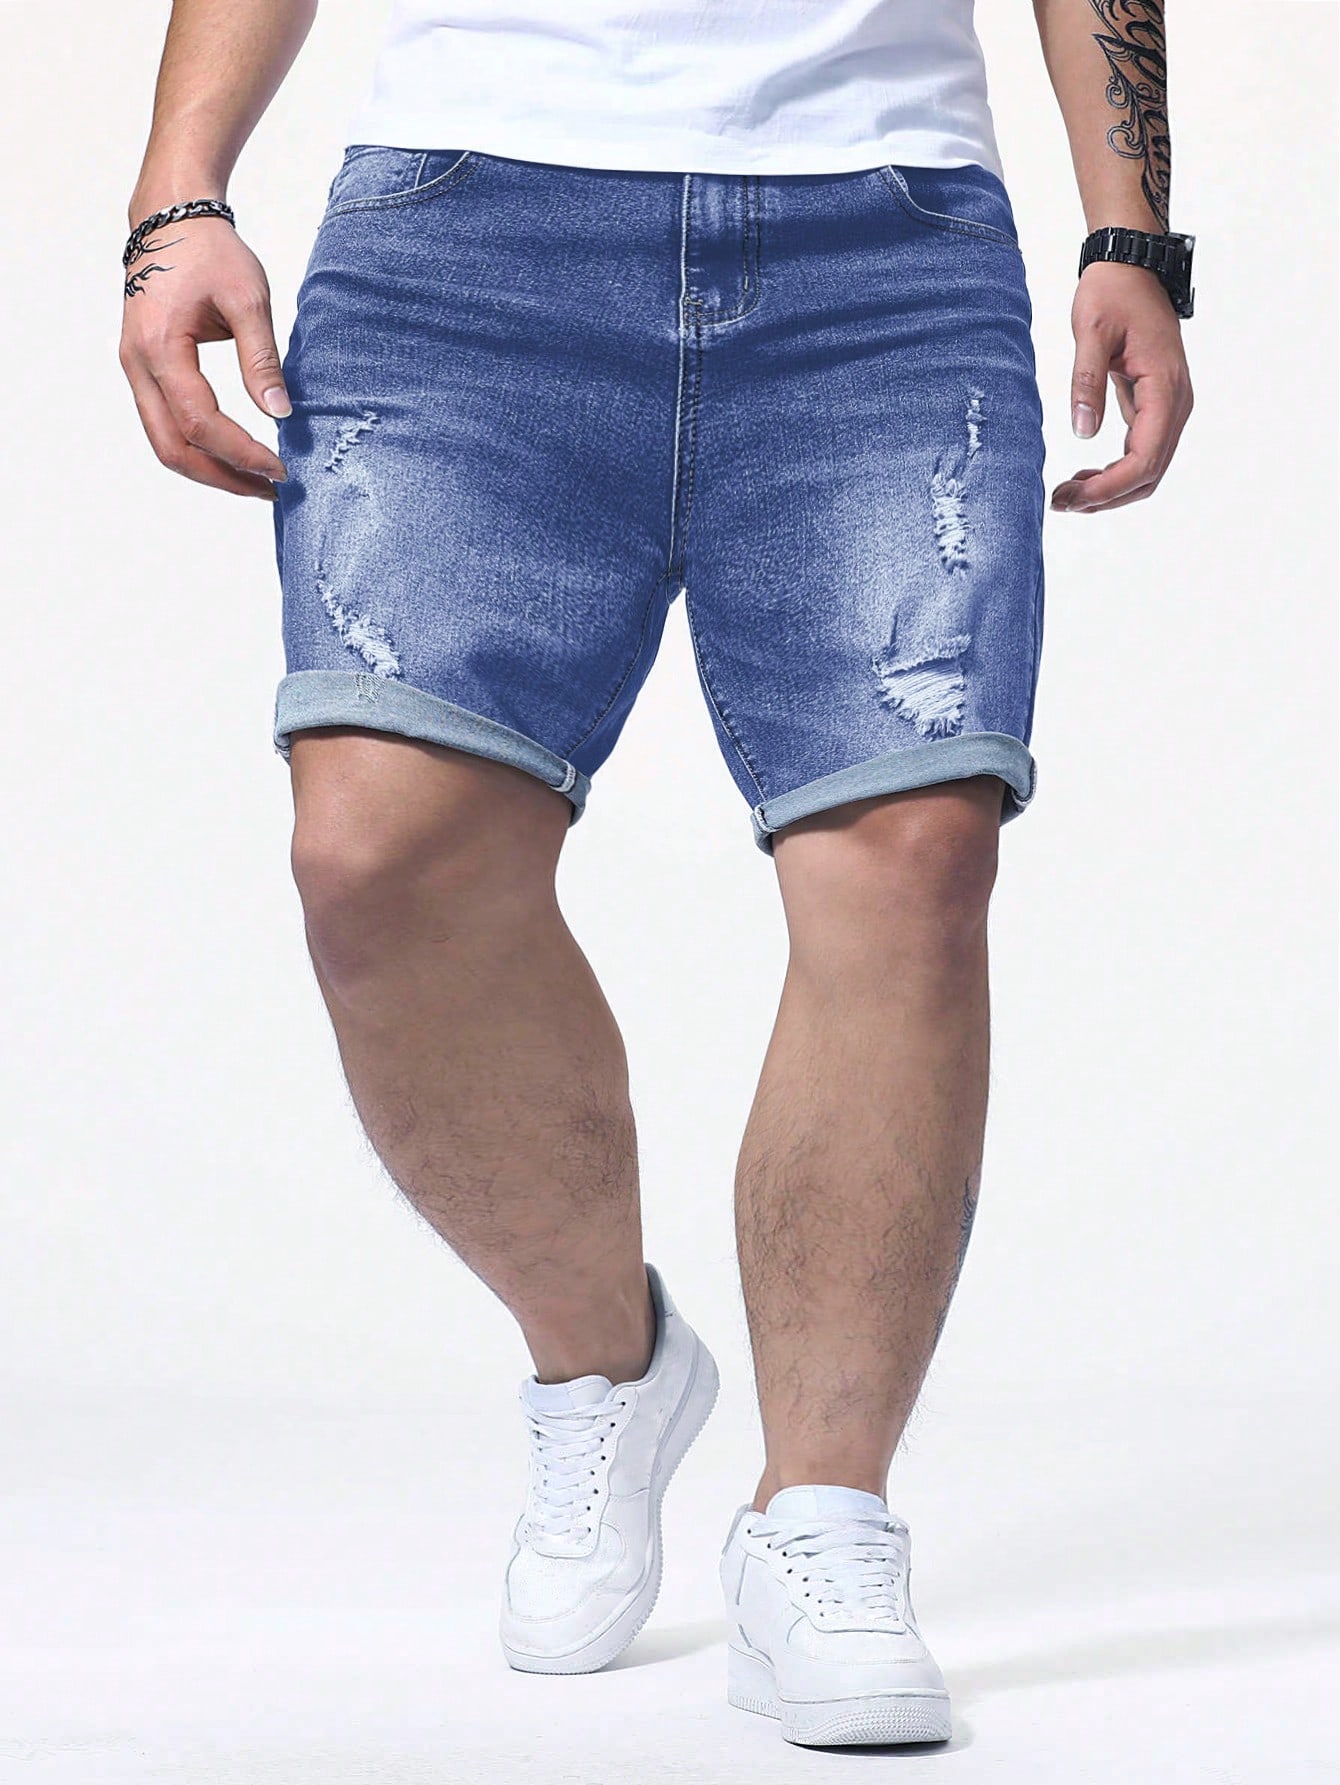 цена Мужские потертые джинсовые шорты Manfinity EMRG больших размеров, средняя стирка